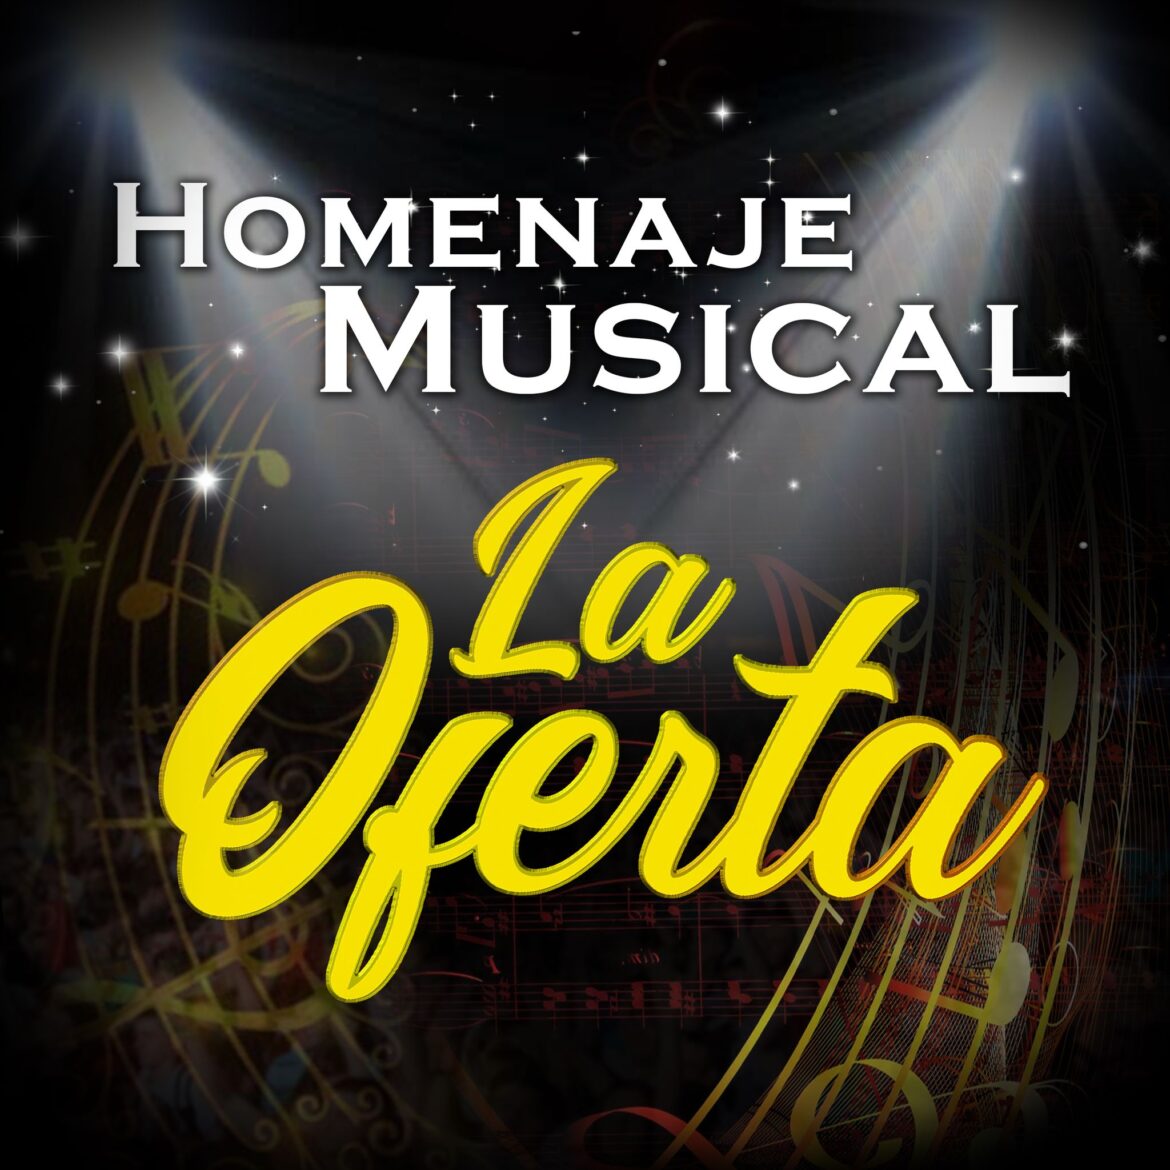 Homenaje Musical Orquesta La Oferta